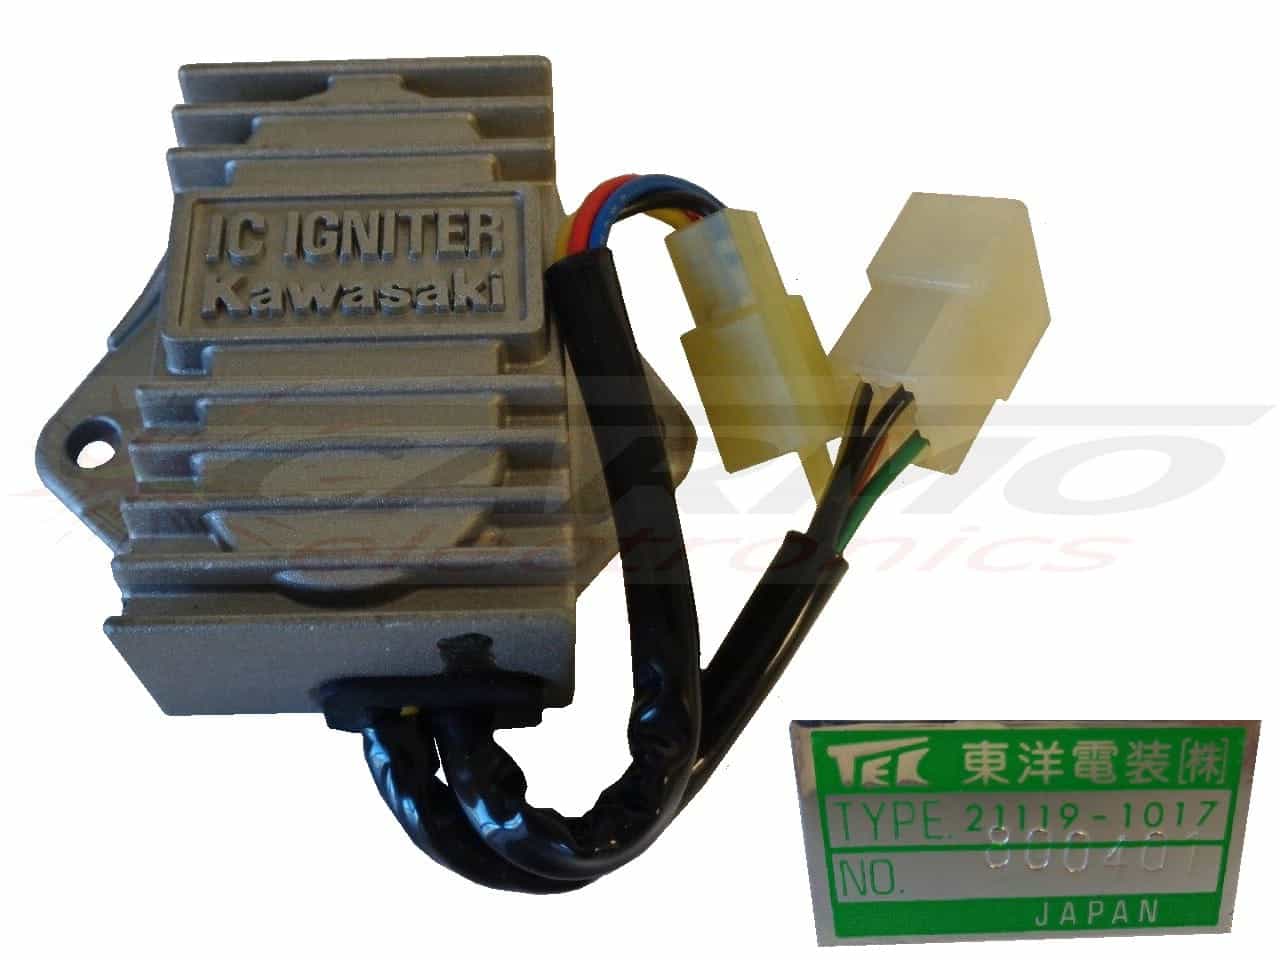 454 LTD (21119-1017) CDI igniter module